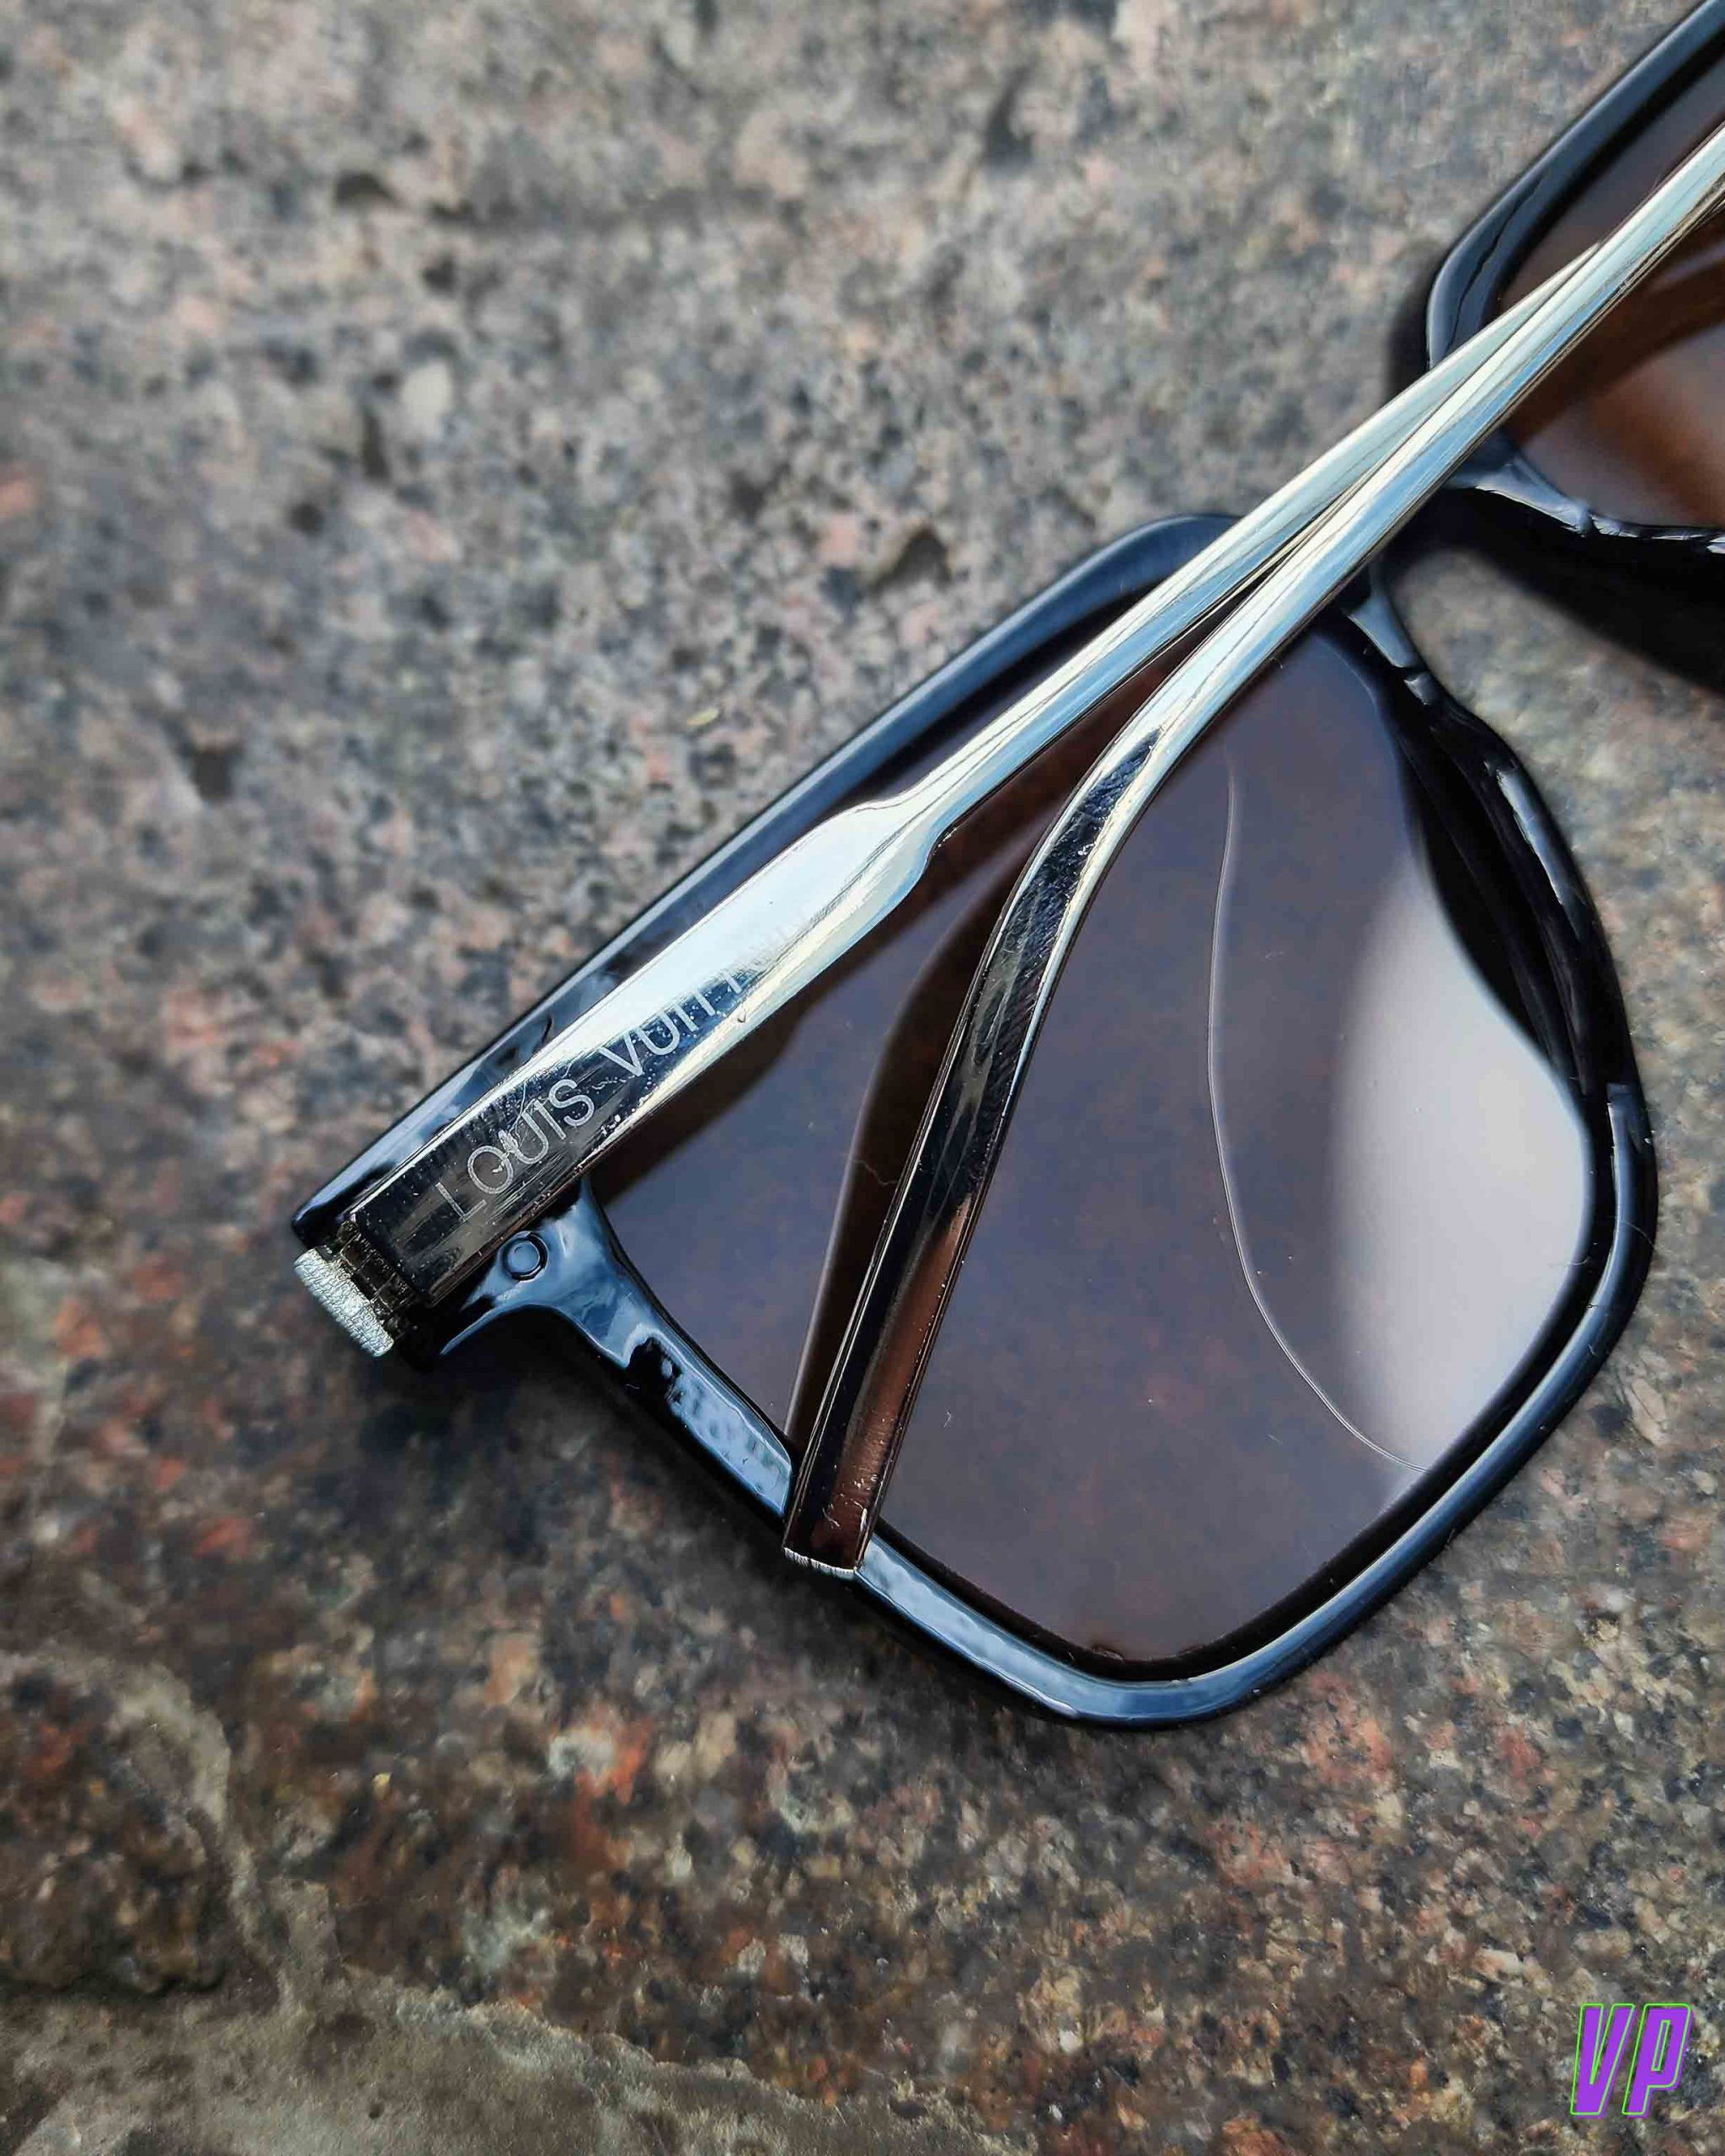 Louis Vuitton Monogram LV Rise Round Sunglasses